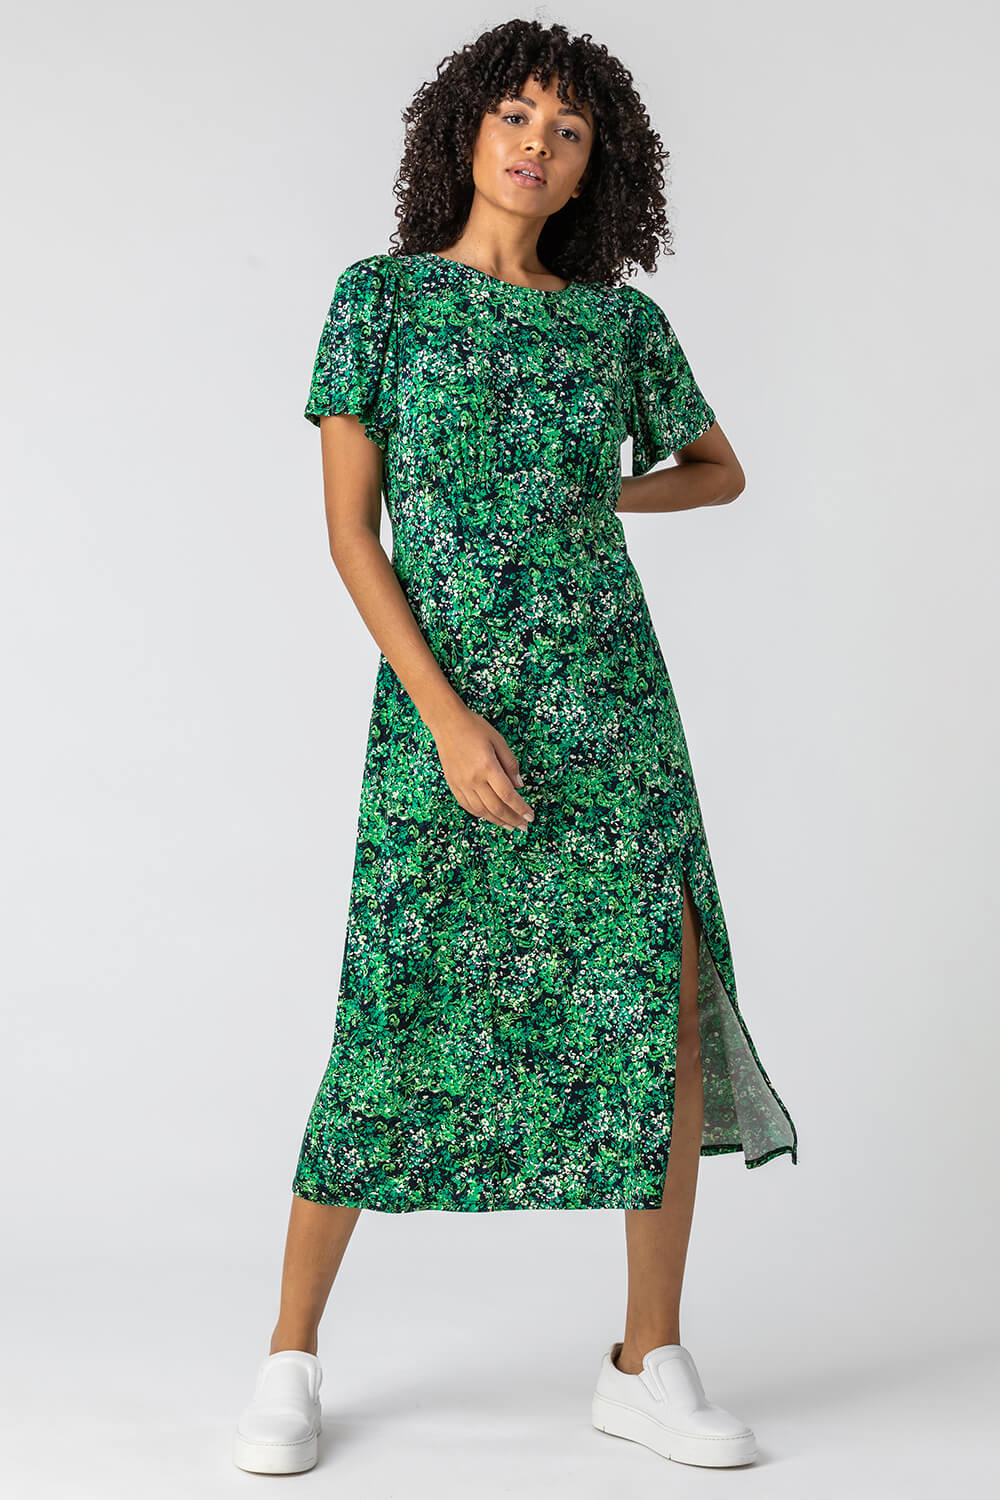 Green Floral Print Side Split Dress, Image 3 of 4